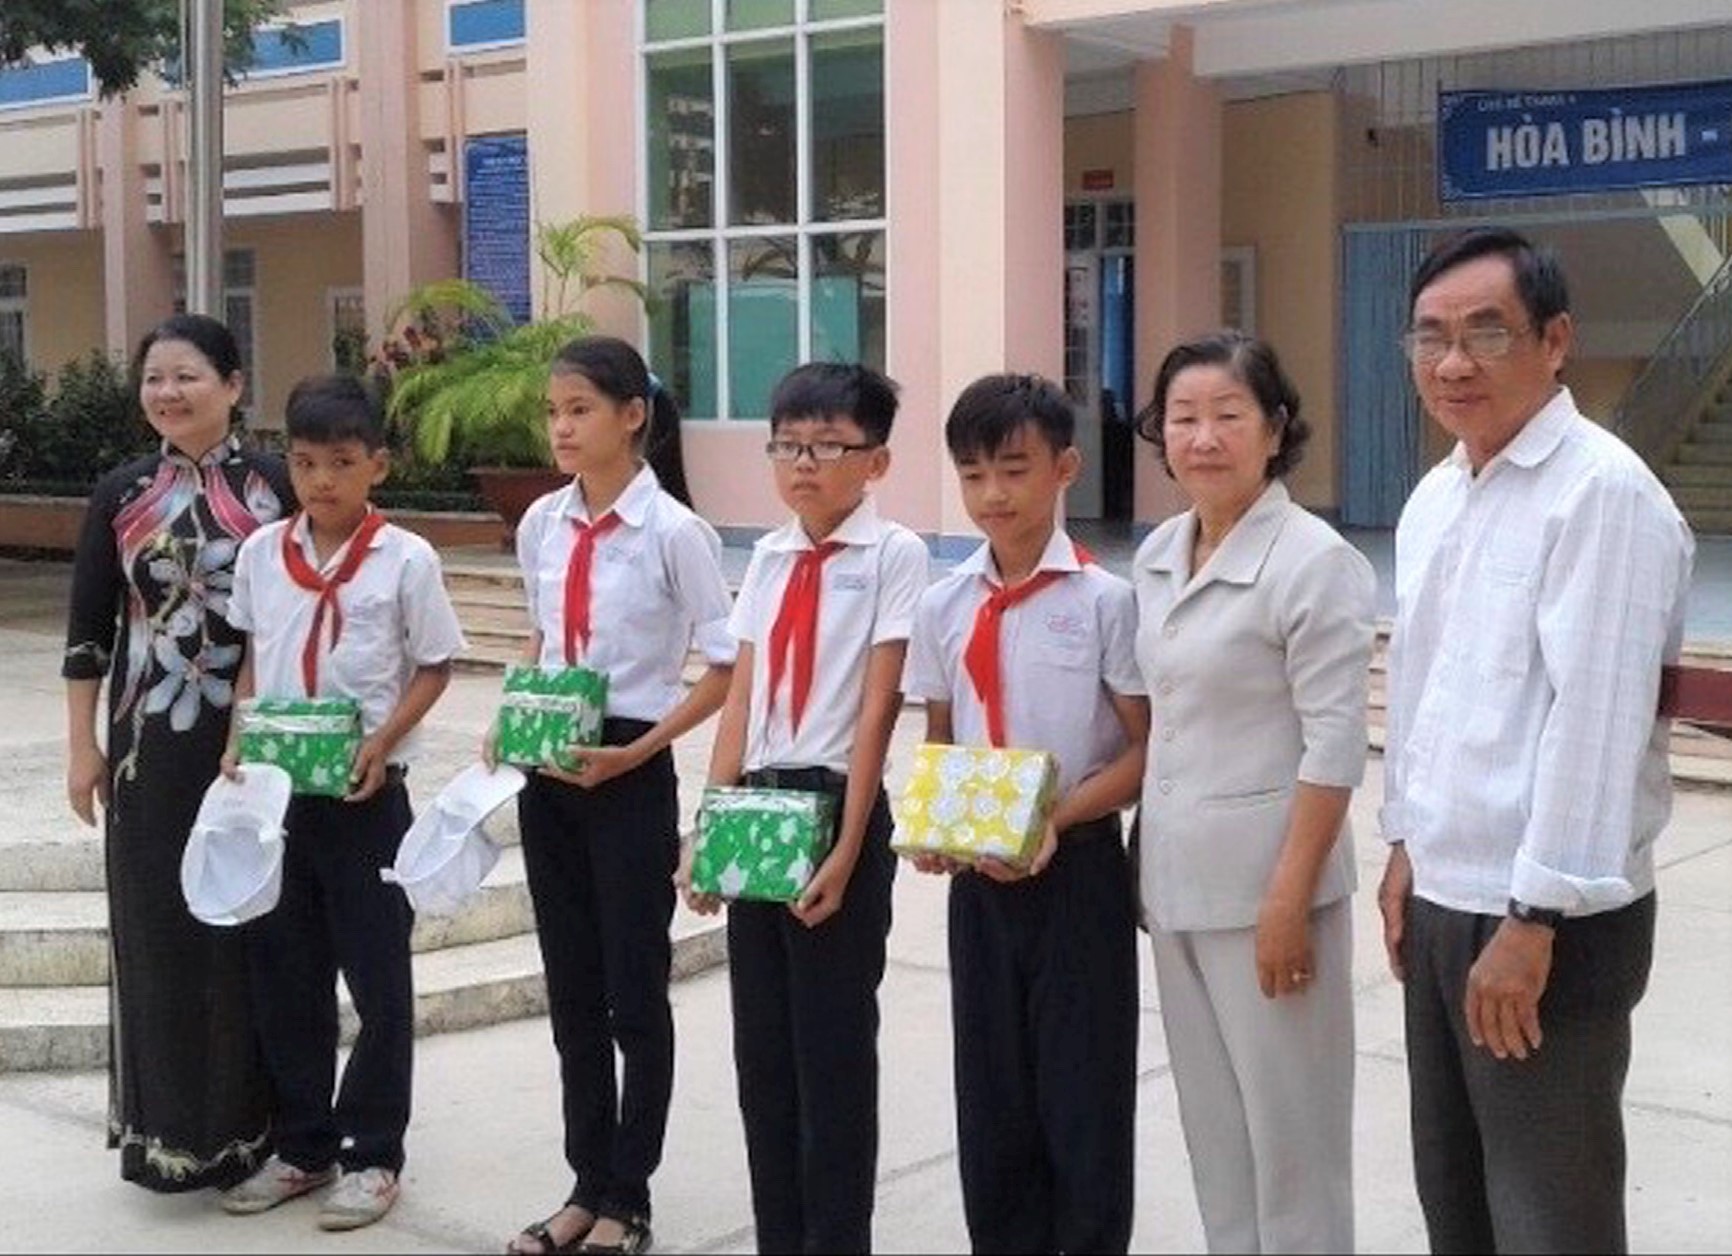 Bà Trần Thị Mạnh (thứ 2 từ phải qua), Chủ tịch Hội Người tù kháng chiến TP. Bà Rịa trao quà cho các cháu của hội viên vượt khó học giỏi.